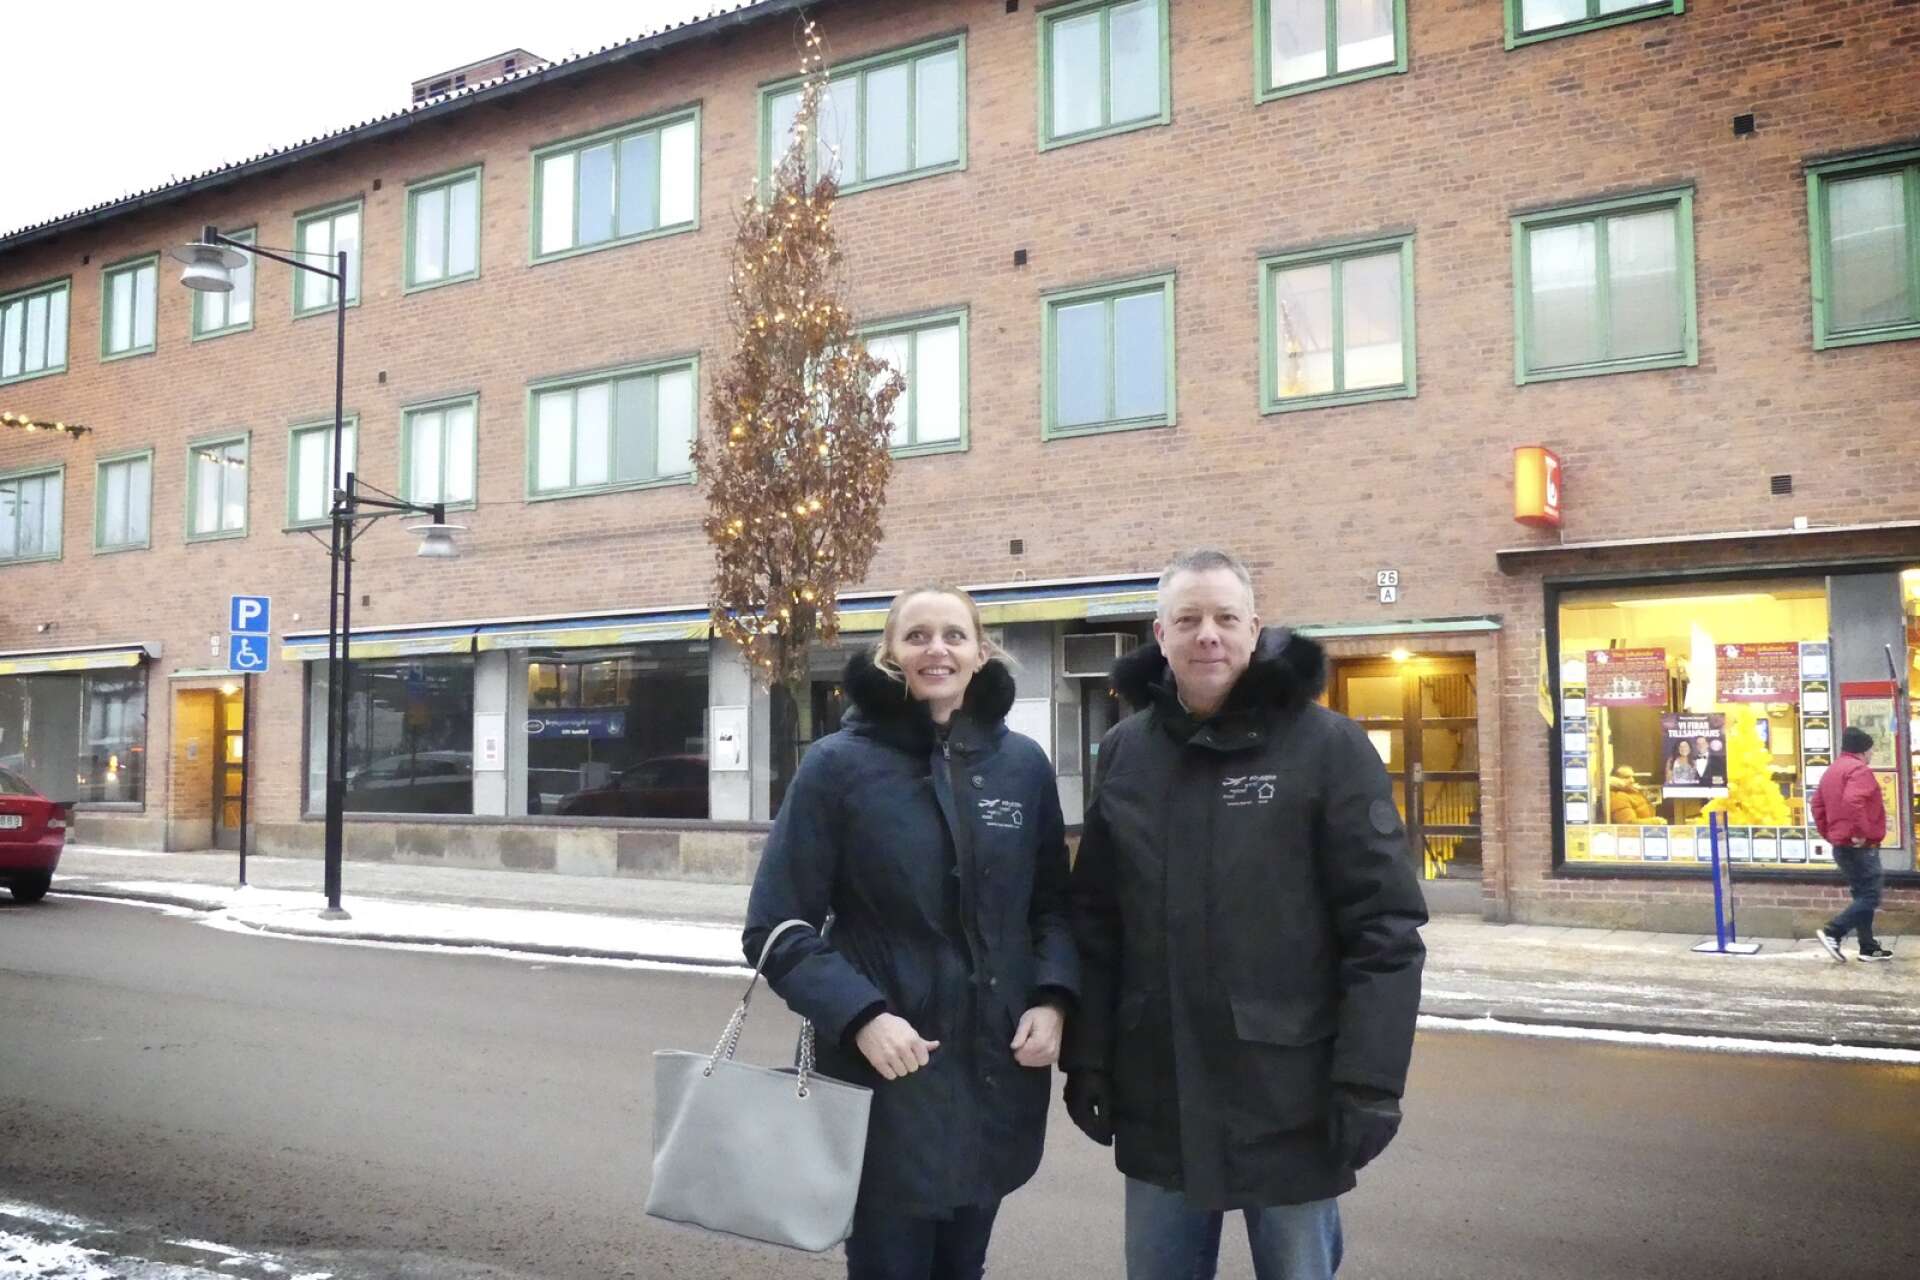 Det hände mycket på fastighetsmarknaden i centrala Säffle under 2022 tack vare att Byälven Bostäder AB:s ägare Tanja och Björn Henningsson köpte hela Awilaras fastighetsbestånd och började genomföra en omfattande upprustning av det stora fastighetsbeståndet. Nyrenoverade lägenheter och verksamhet i tomma butikslokaler blev resultatet.